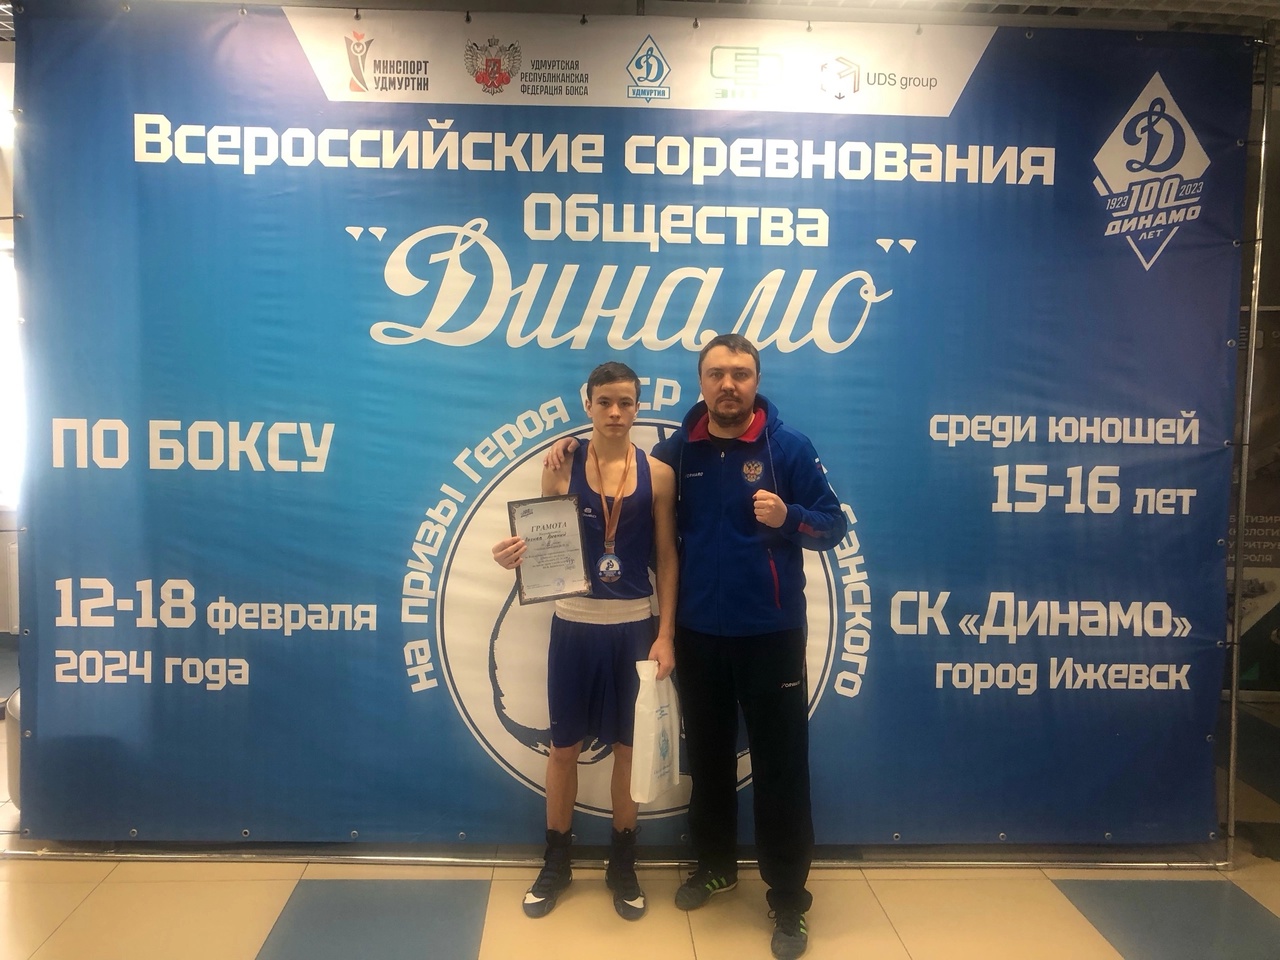 Всероссийские открытые соревнования Общества «Динамо» по боксу